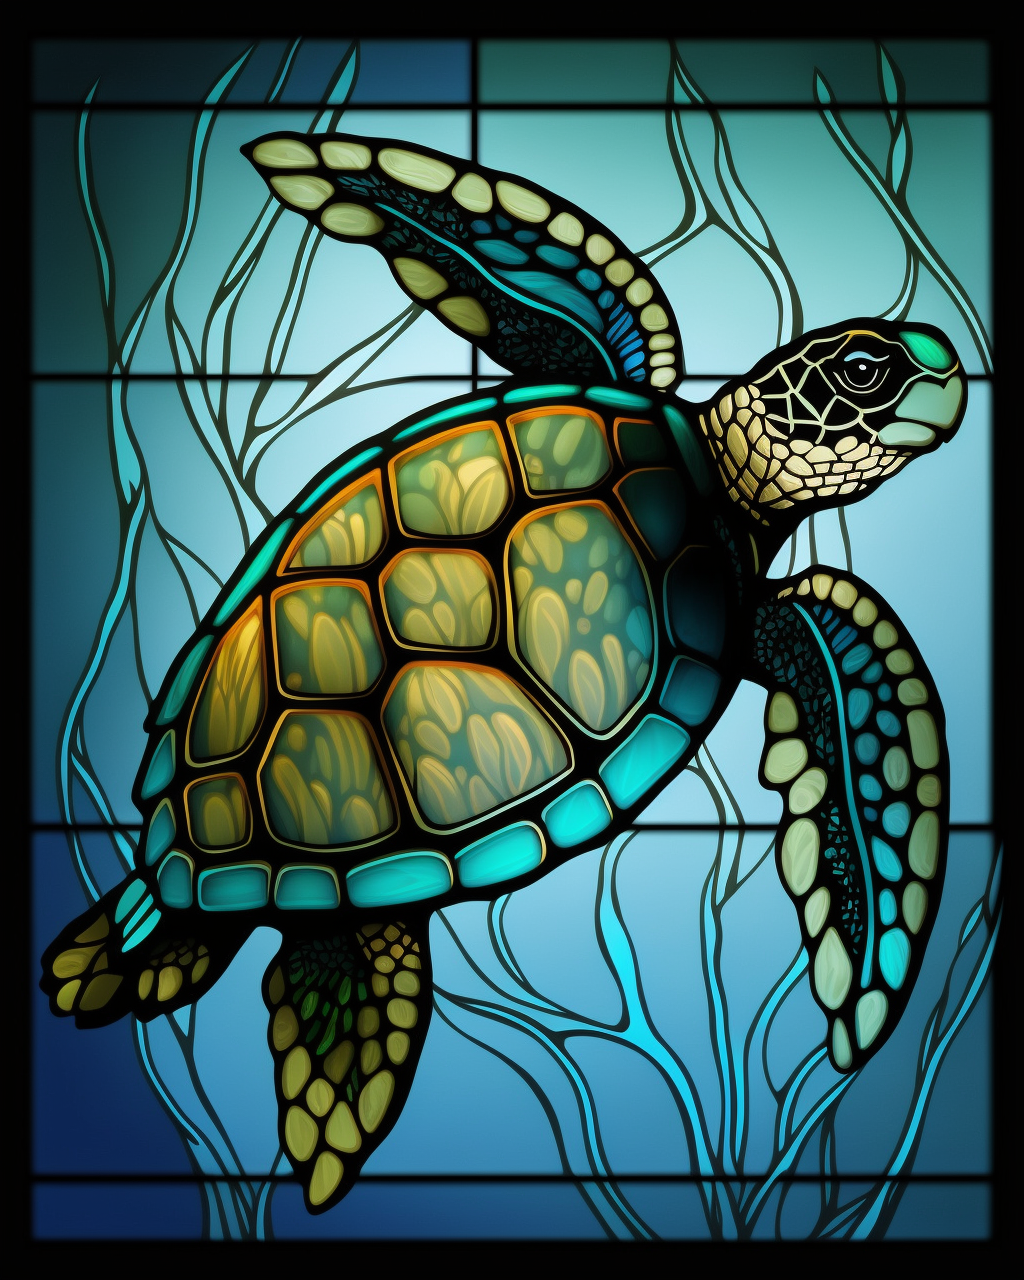 5D Diamond Painting Five Sea Turtles Kit